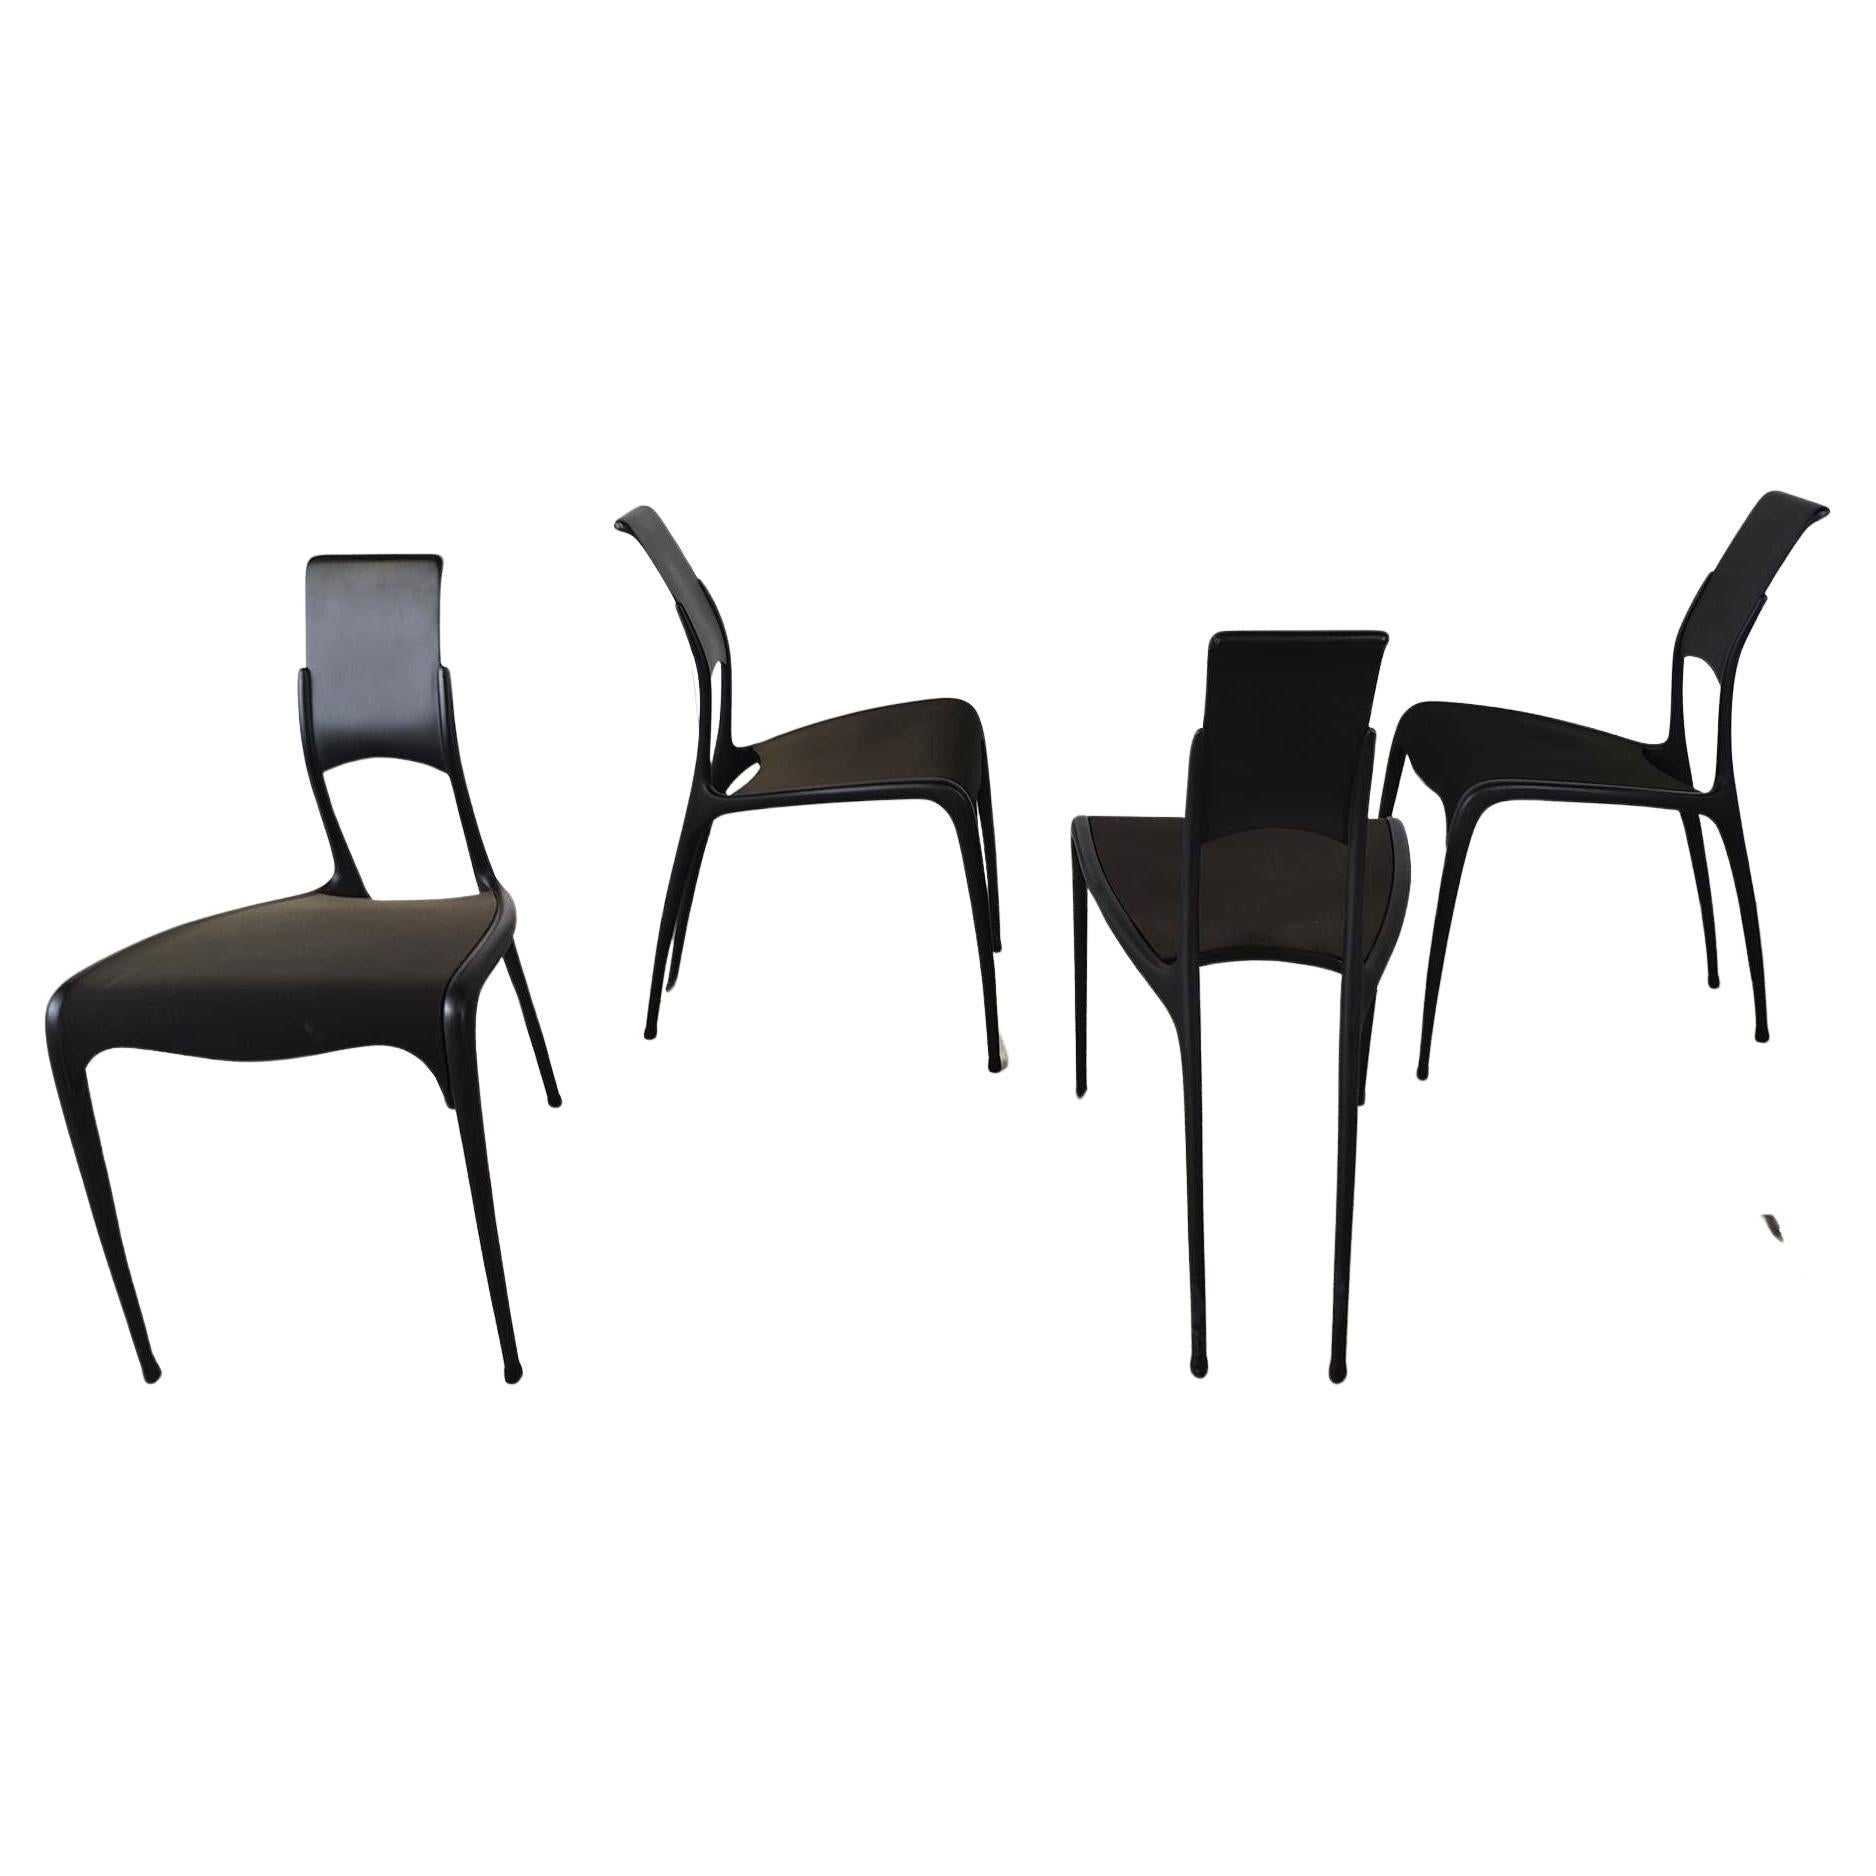 Rare carbon fibre C06 chairs by Pol Quadens, 1990s